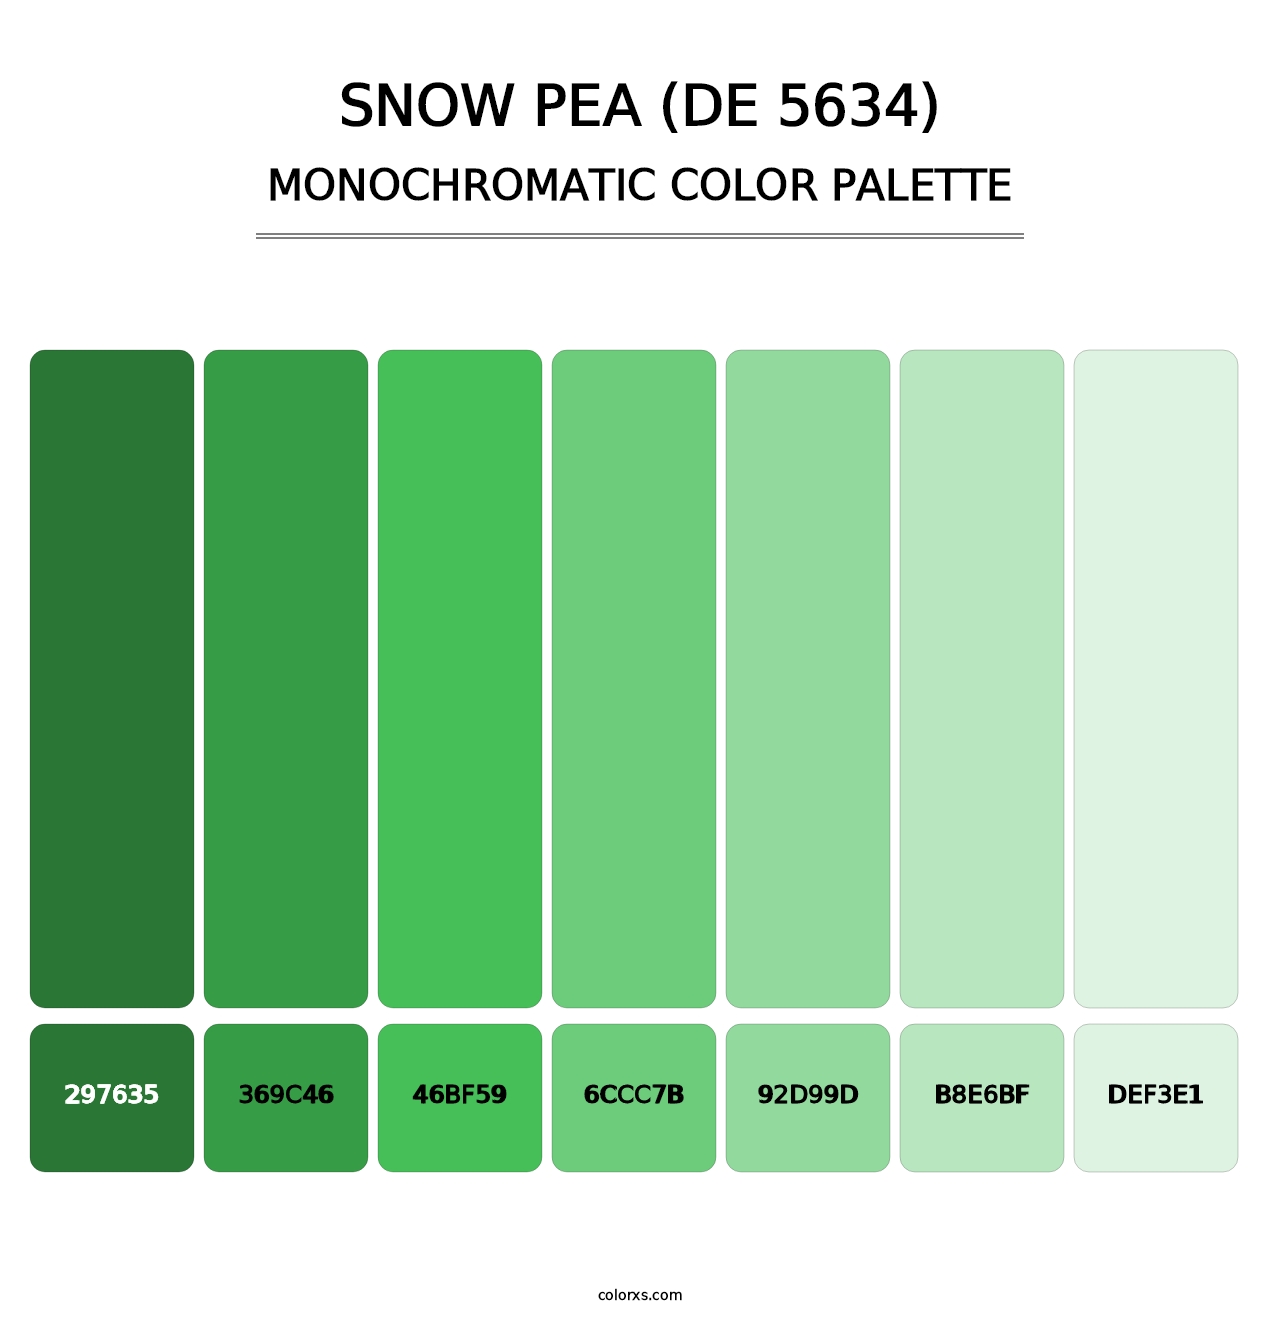 Snow Pea (DE 5634) - Monochromatic Color Palette